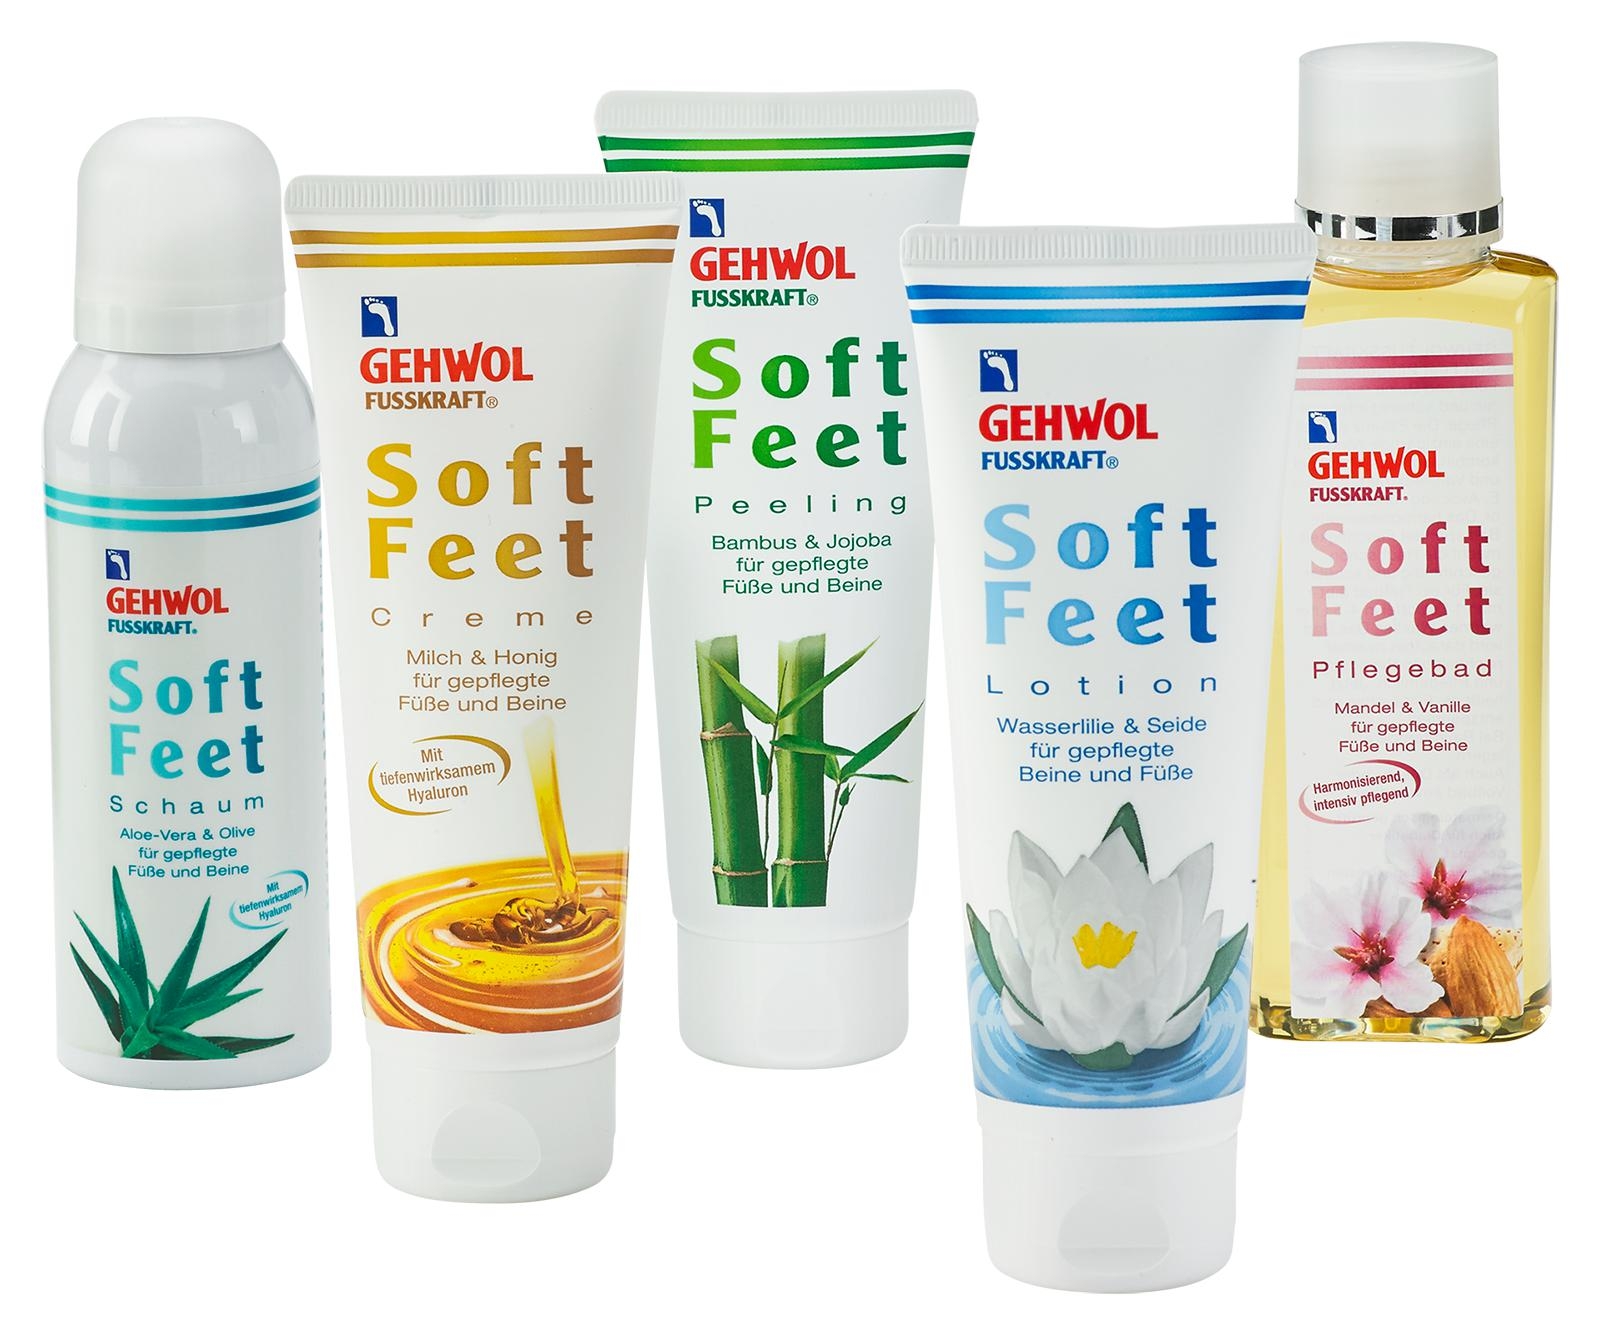 GEHWOL FUSSKRAFT Soft Feet Lotion 500 ml Dose